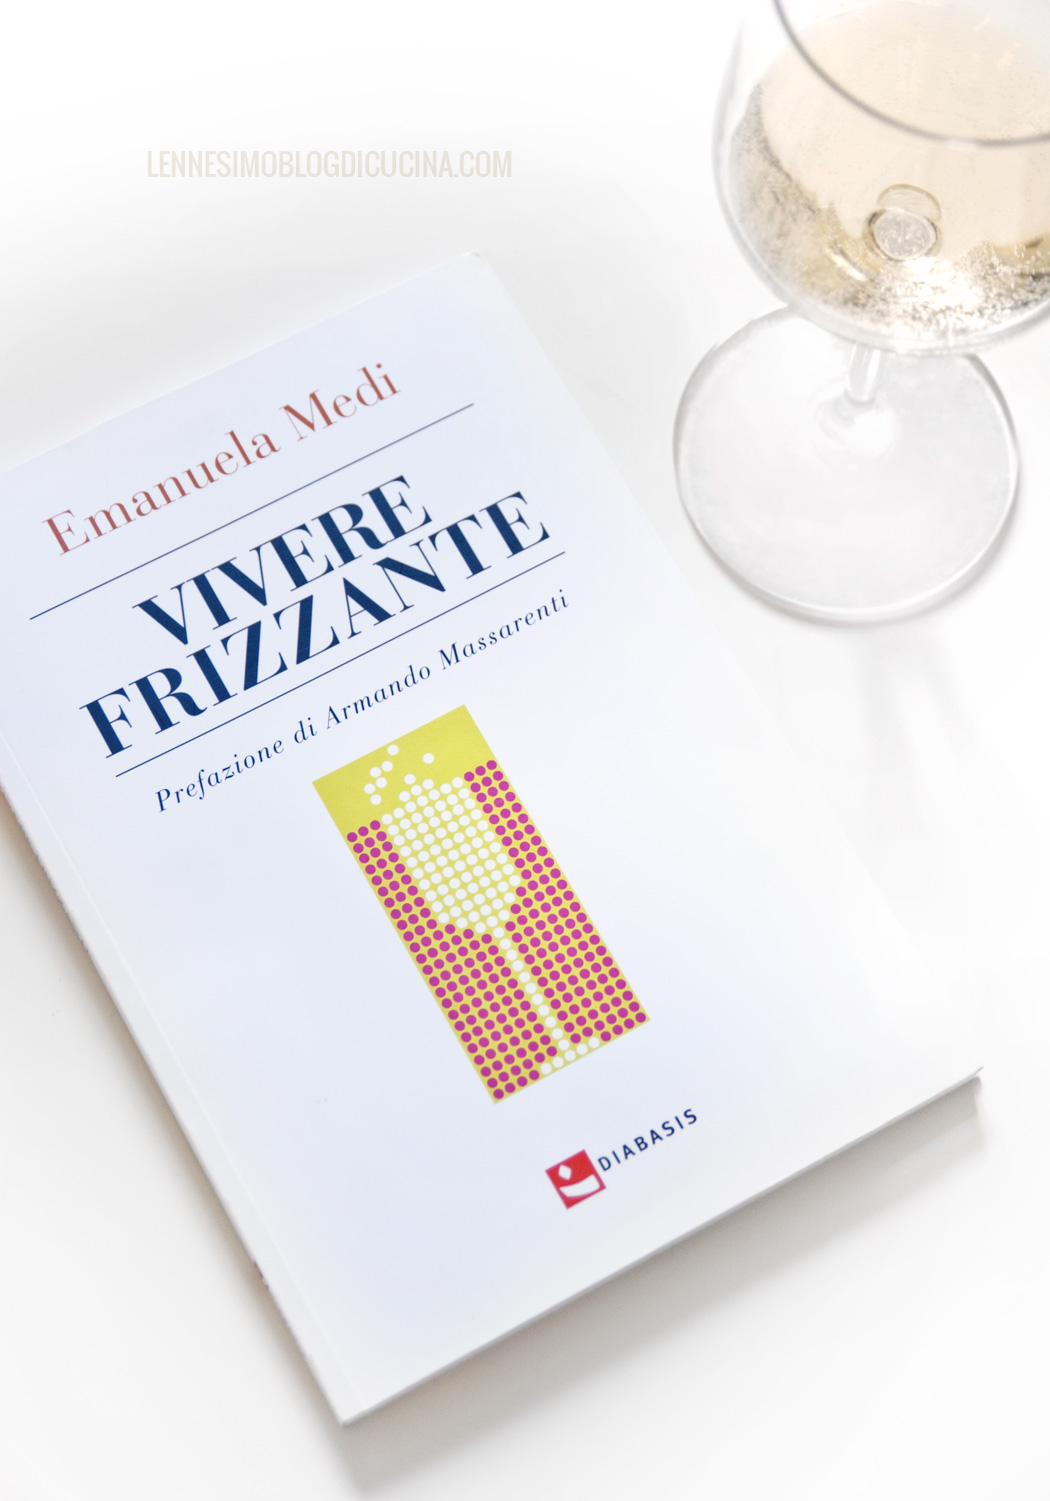 Vivere Frizzante - Emanuela Medi